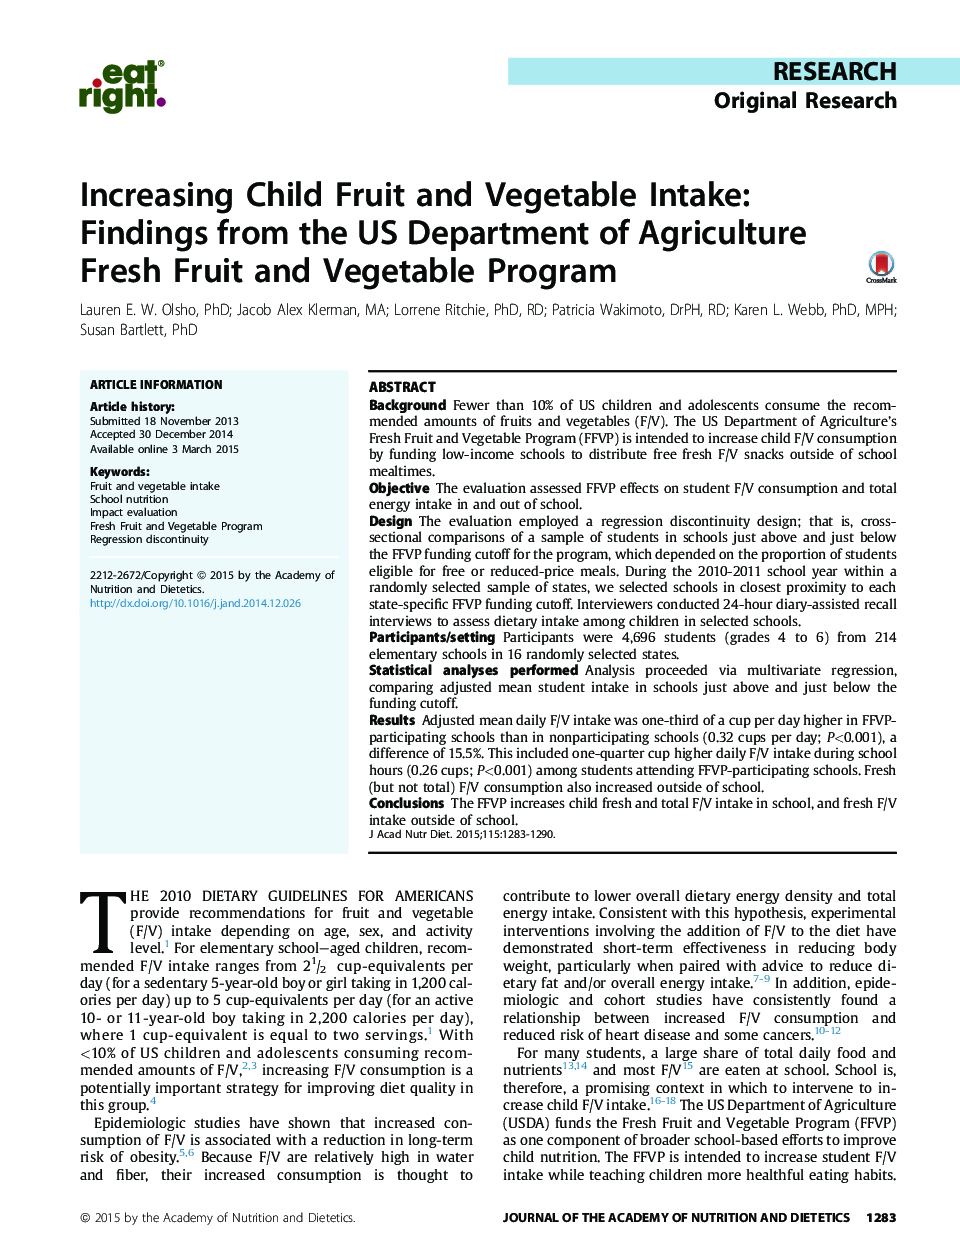 تحقیقات تحقیقاتی تحقیق در مورد افزایش مصرف میوه و سبزیجات کودکان: یافته های وزارت کشاورزی ایالات متحده آمریکا برنامه تازه میوه و سبزیجات 